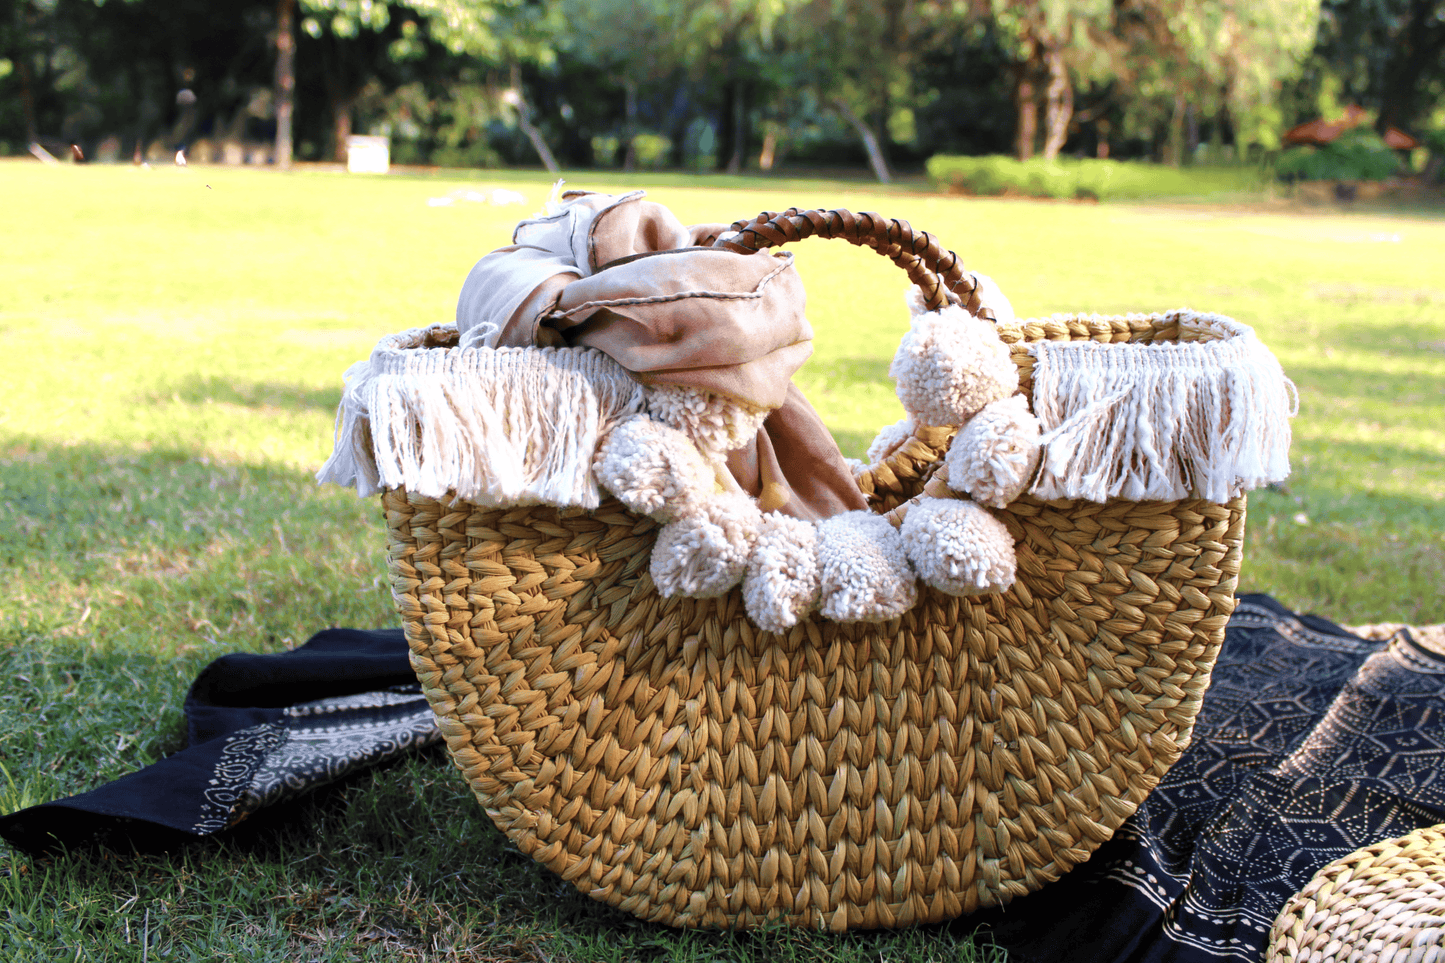 Boho Shopping Basket Bag with Pompom